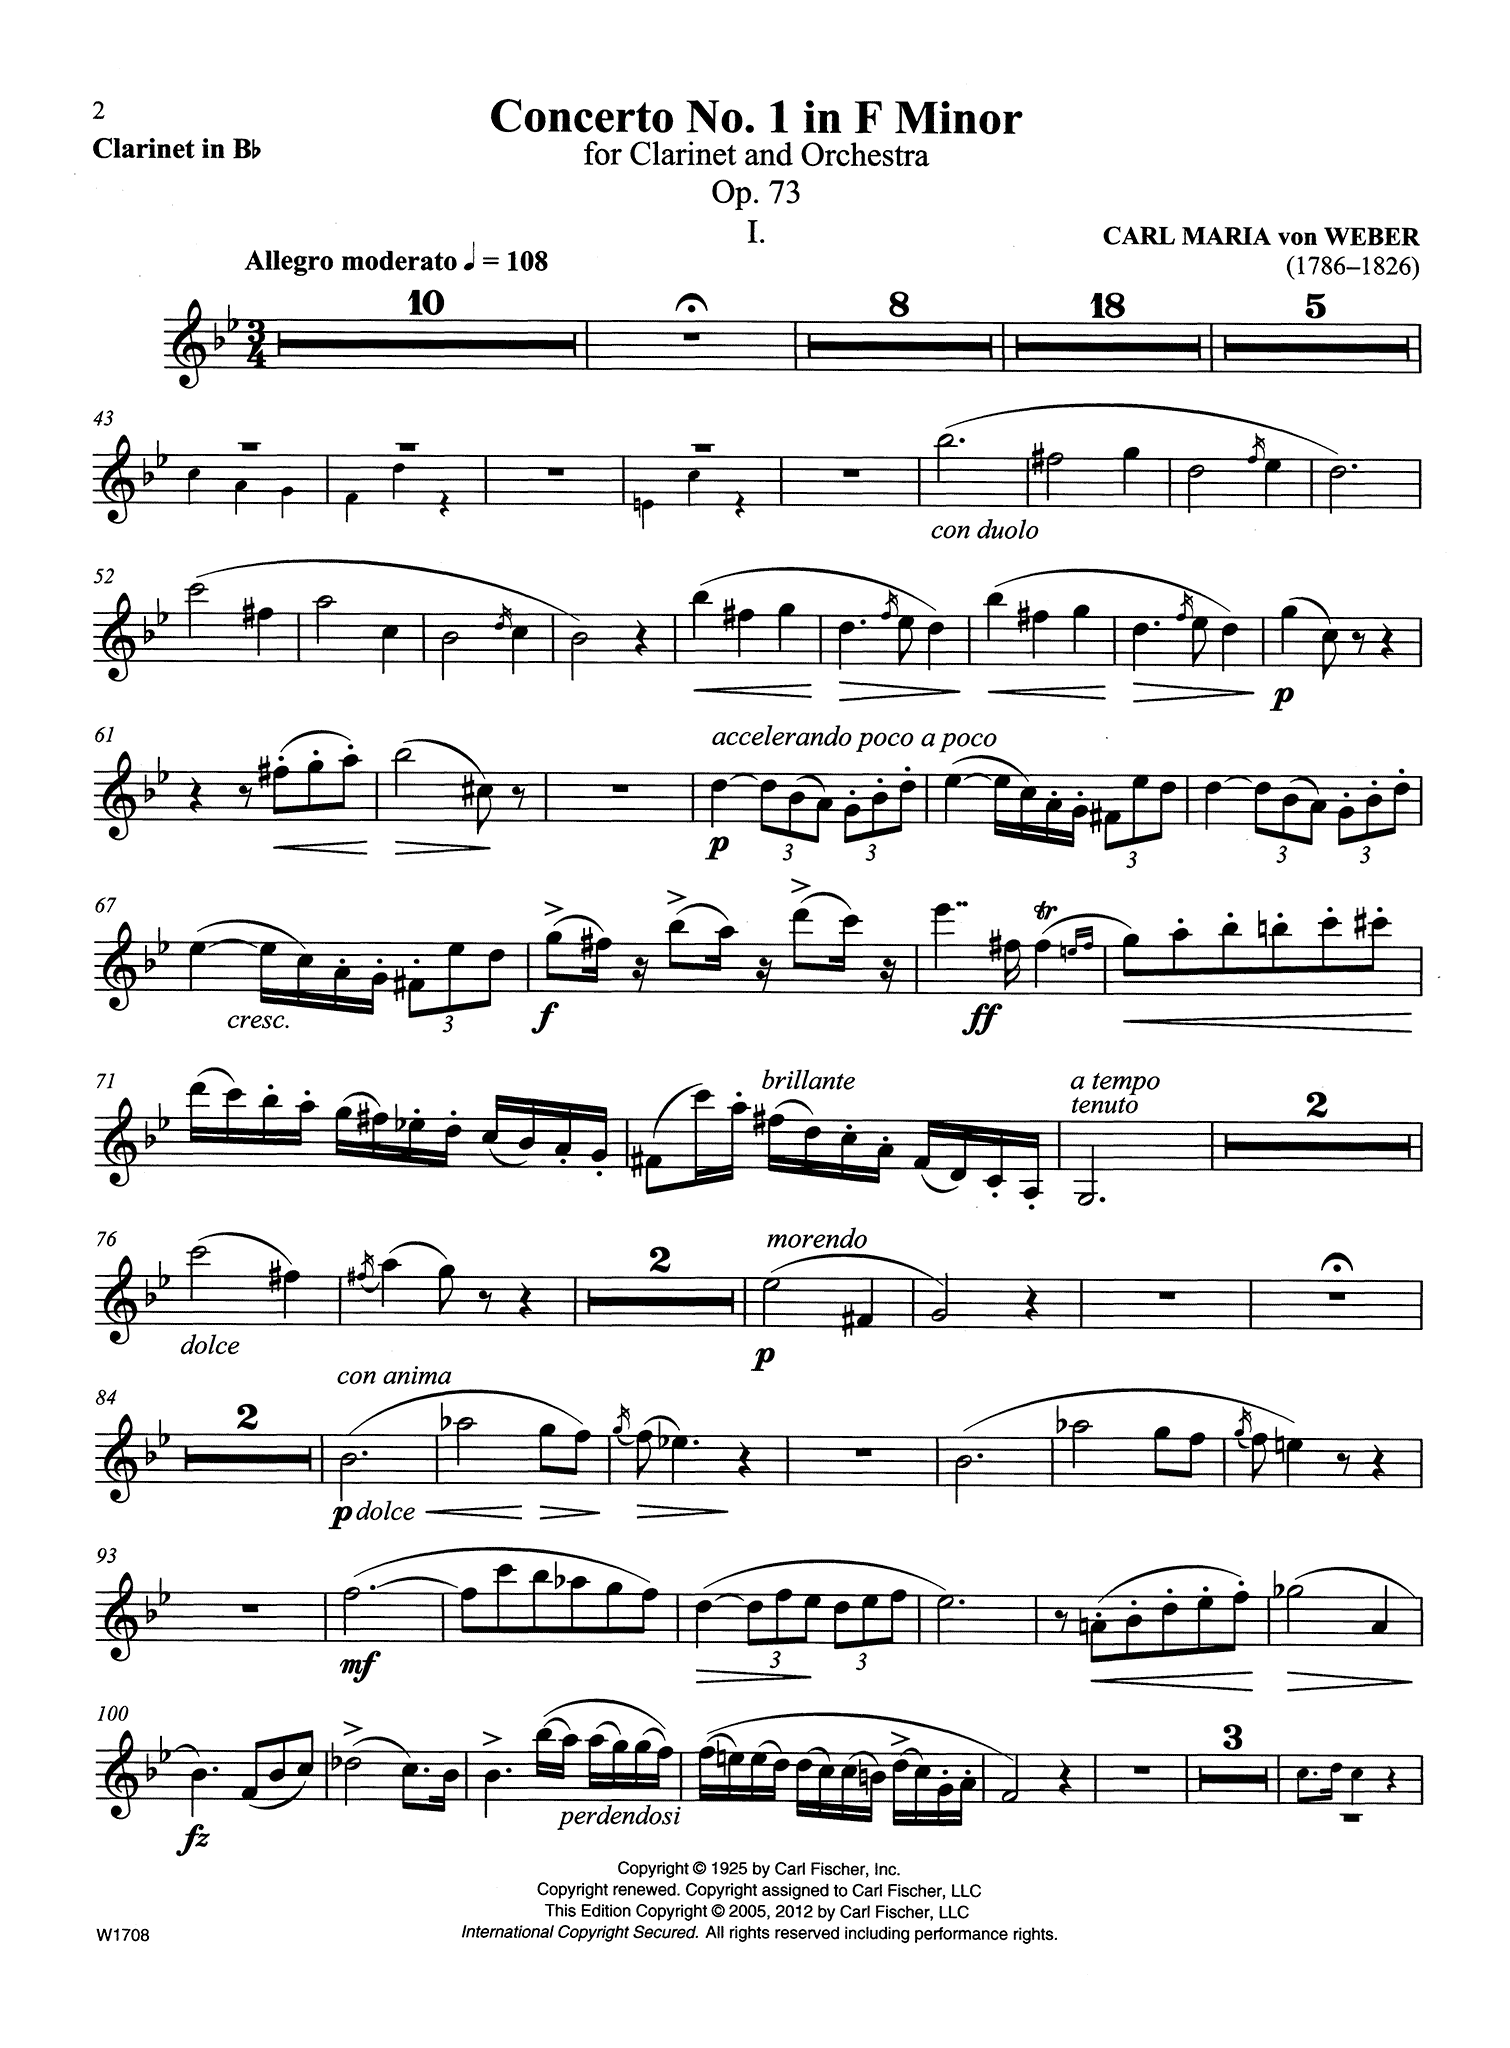 Clarinet Concerto No. 1, Op. 73 Clarinet part